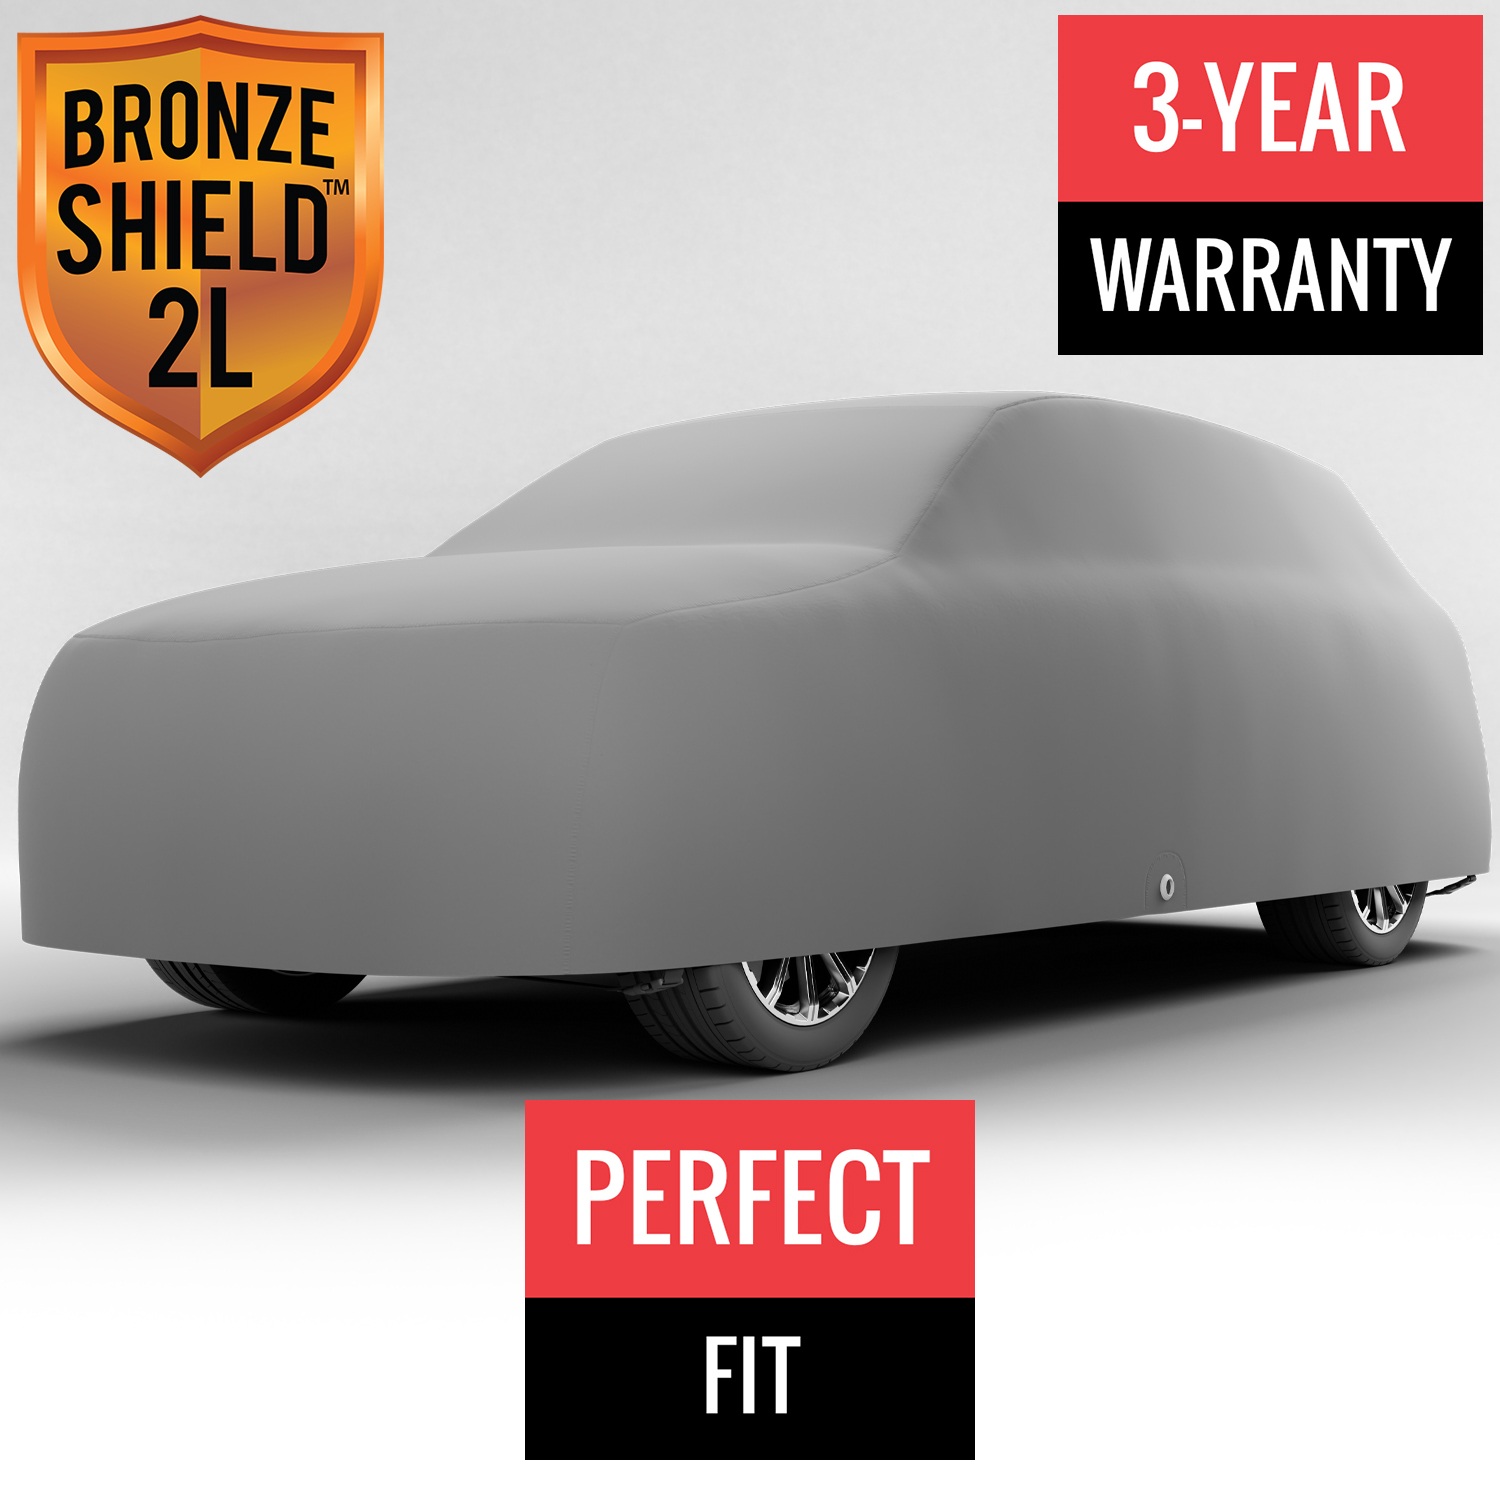 Bronze Shield 2L - Car Cover for Mazda CX-9 2009 SUV 4-Door